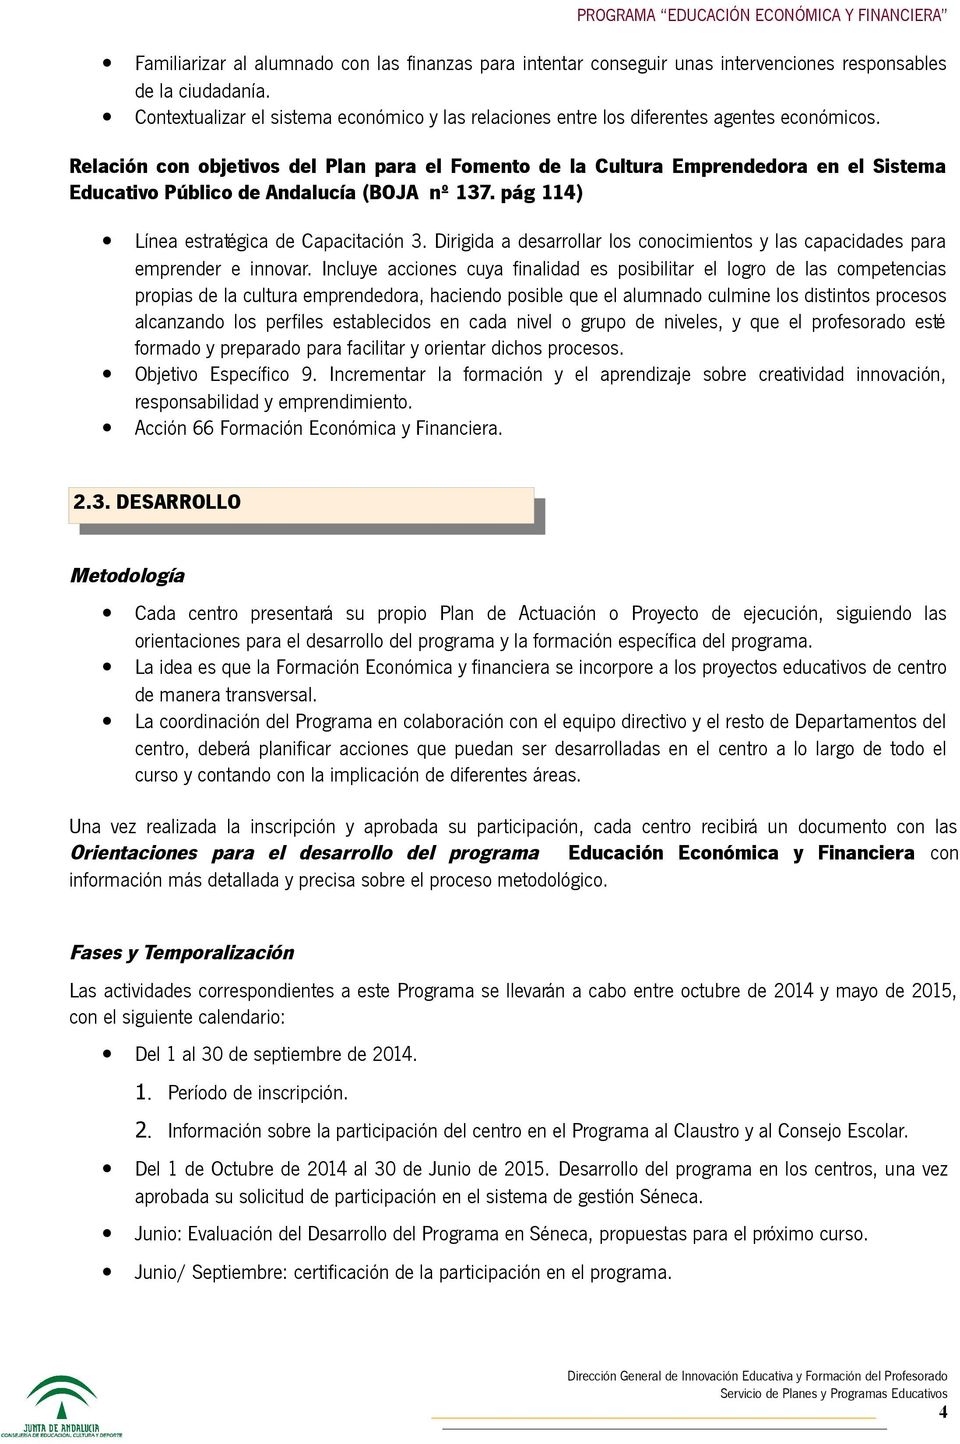 Relación con objetivos del Plan para el Fomento de la Cultura Emprendedora en el Sistema Educativo Público de Andalucía (BOJA nº 137. pág 114) Línea estratégica de Capacitación 3.